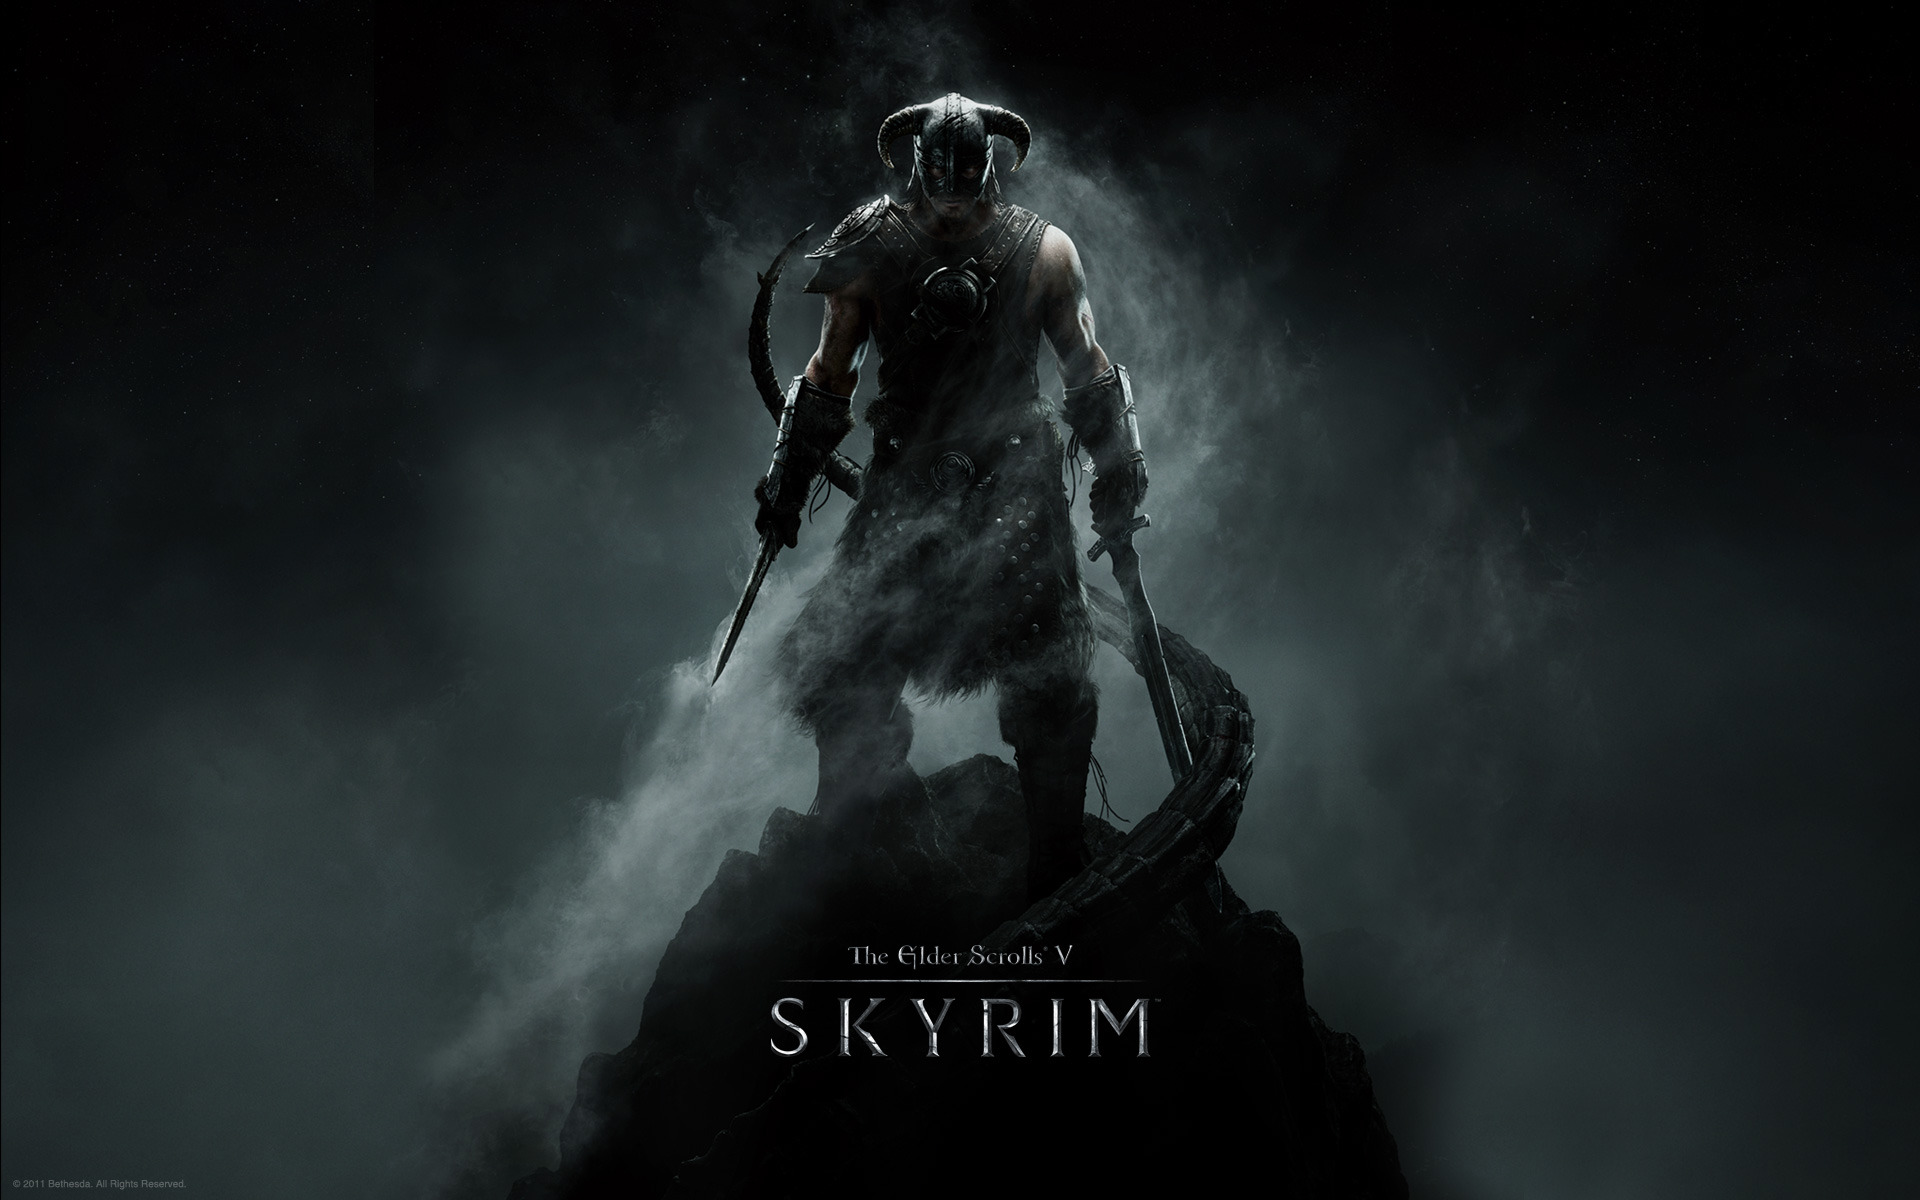 The Elder Scrolls V: Skyrim wallpaper Warrior in the Mist